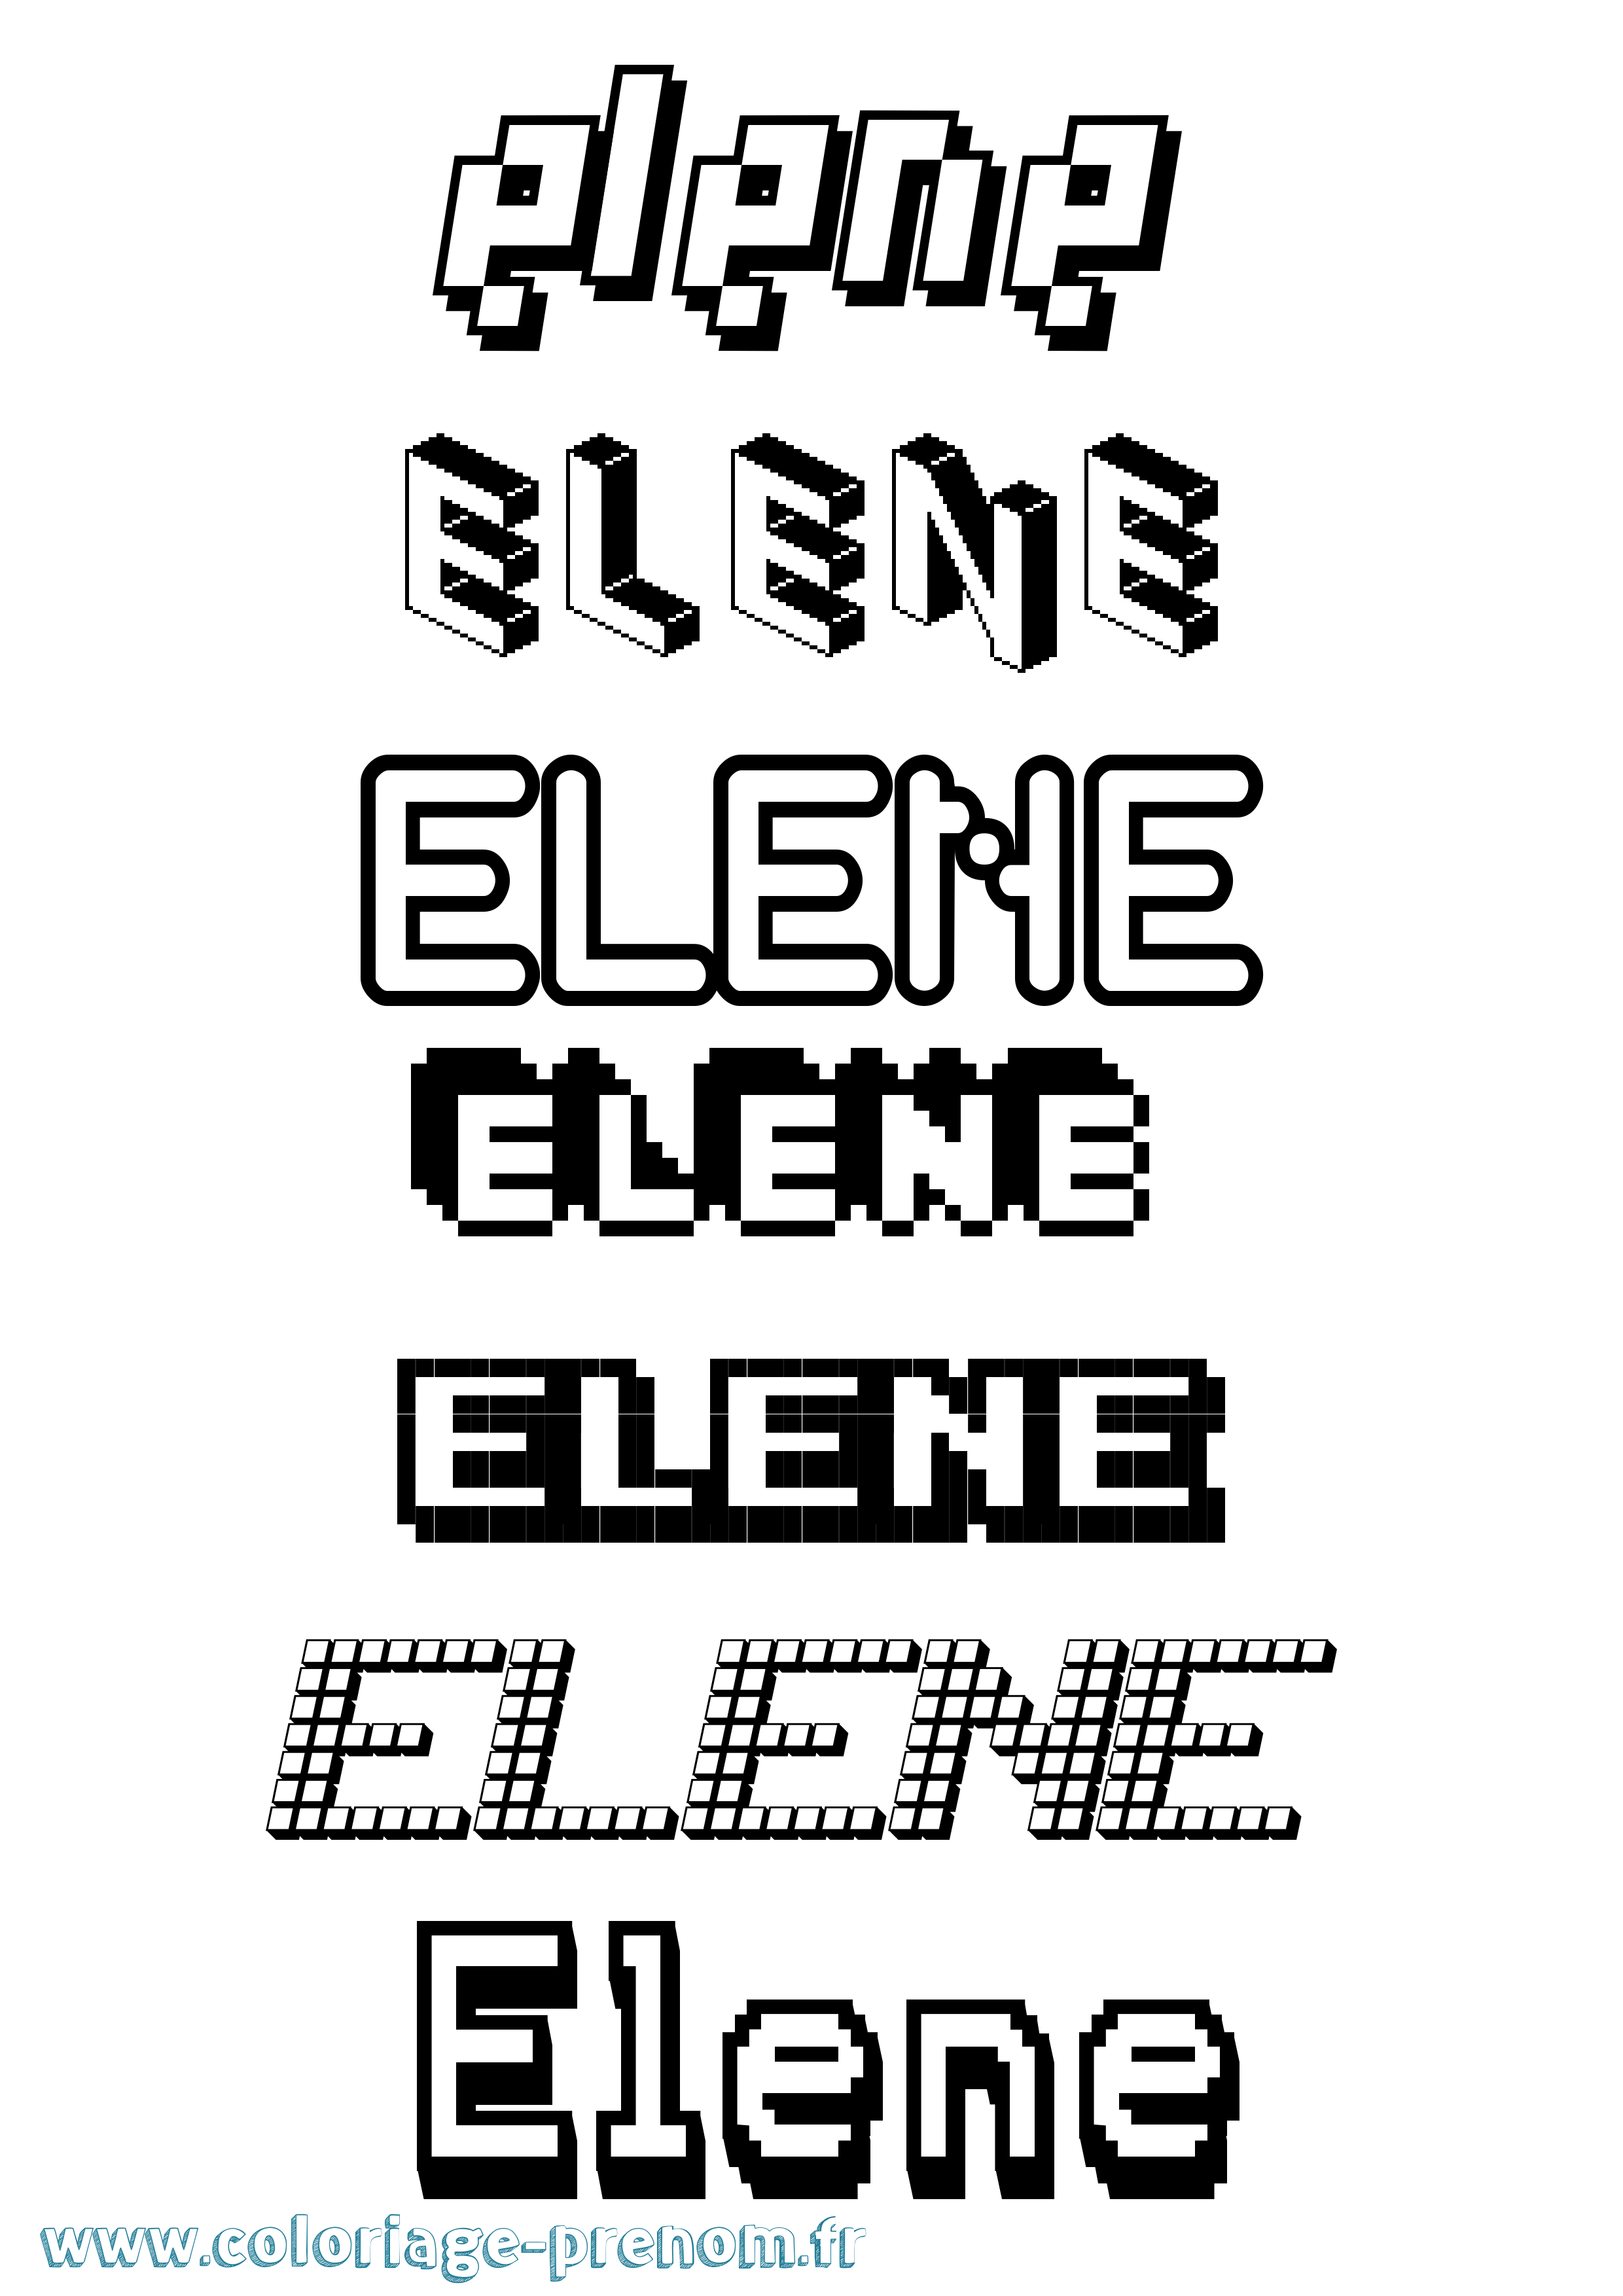 Coloriage prénom Elene Pixel